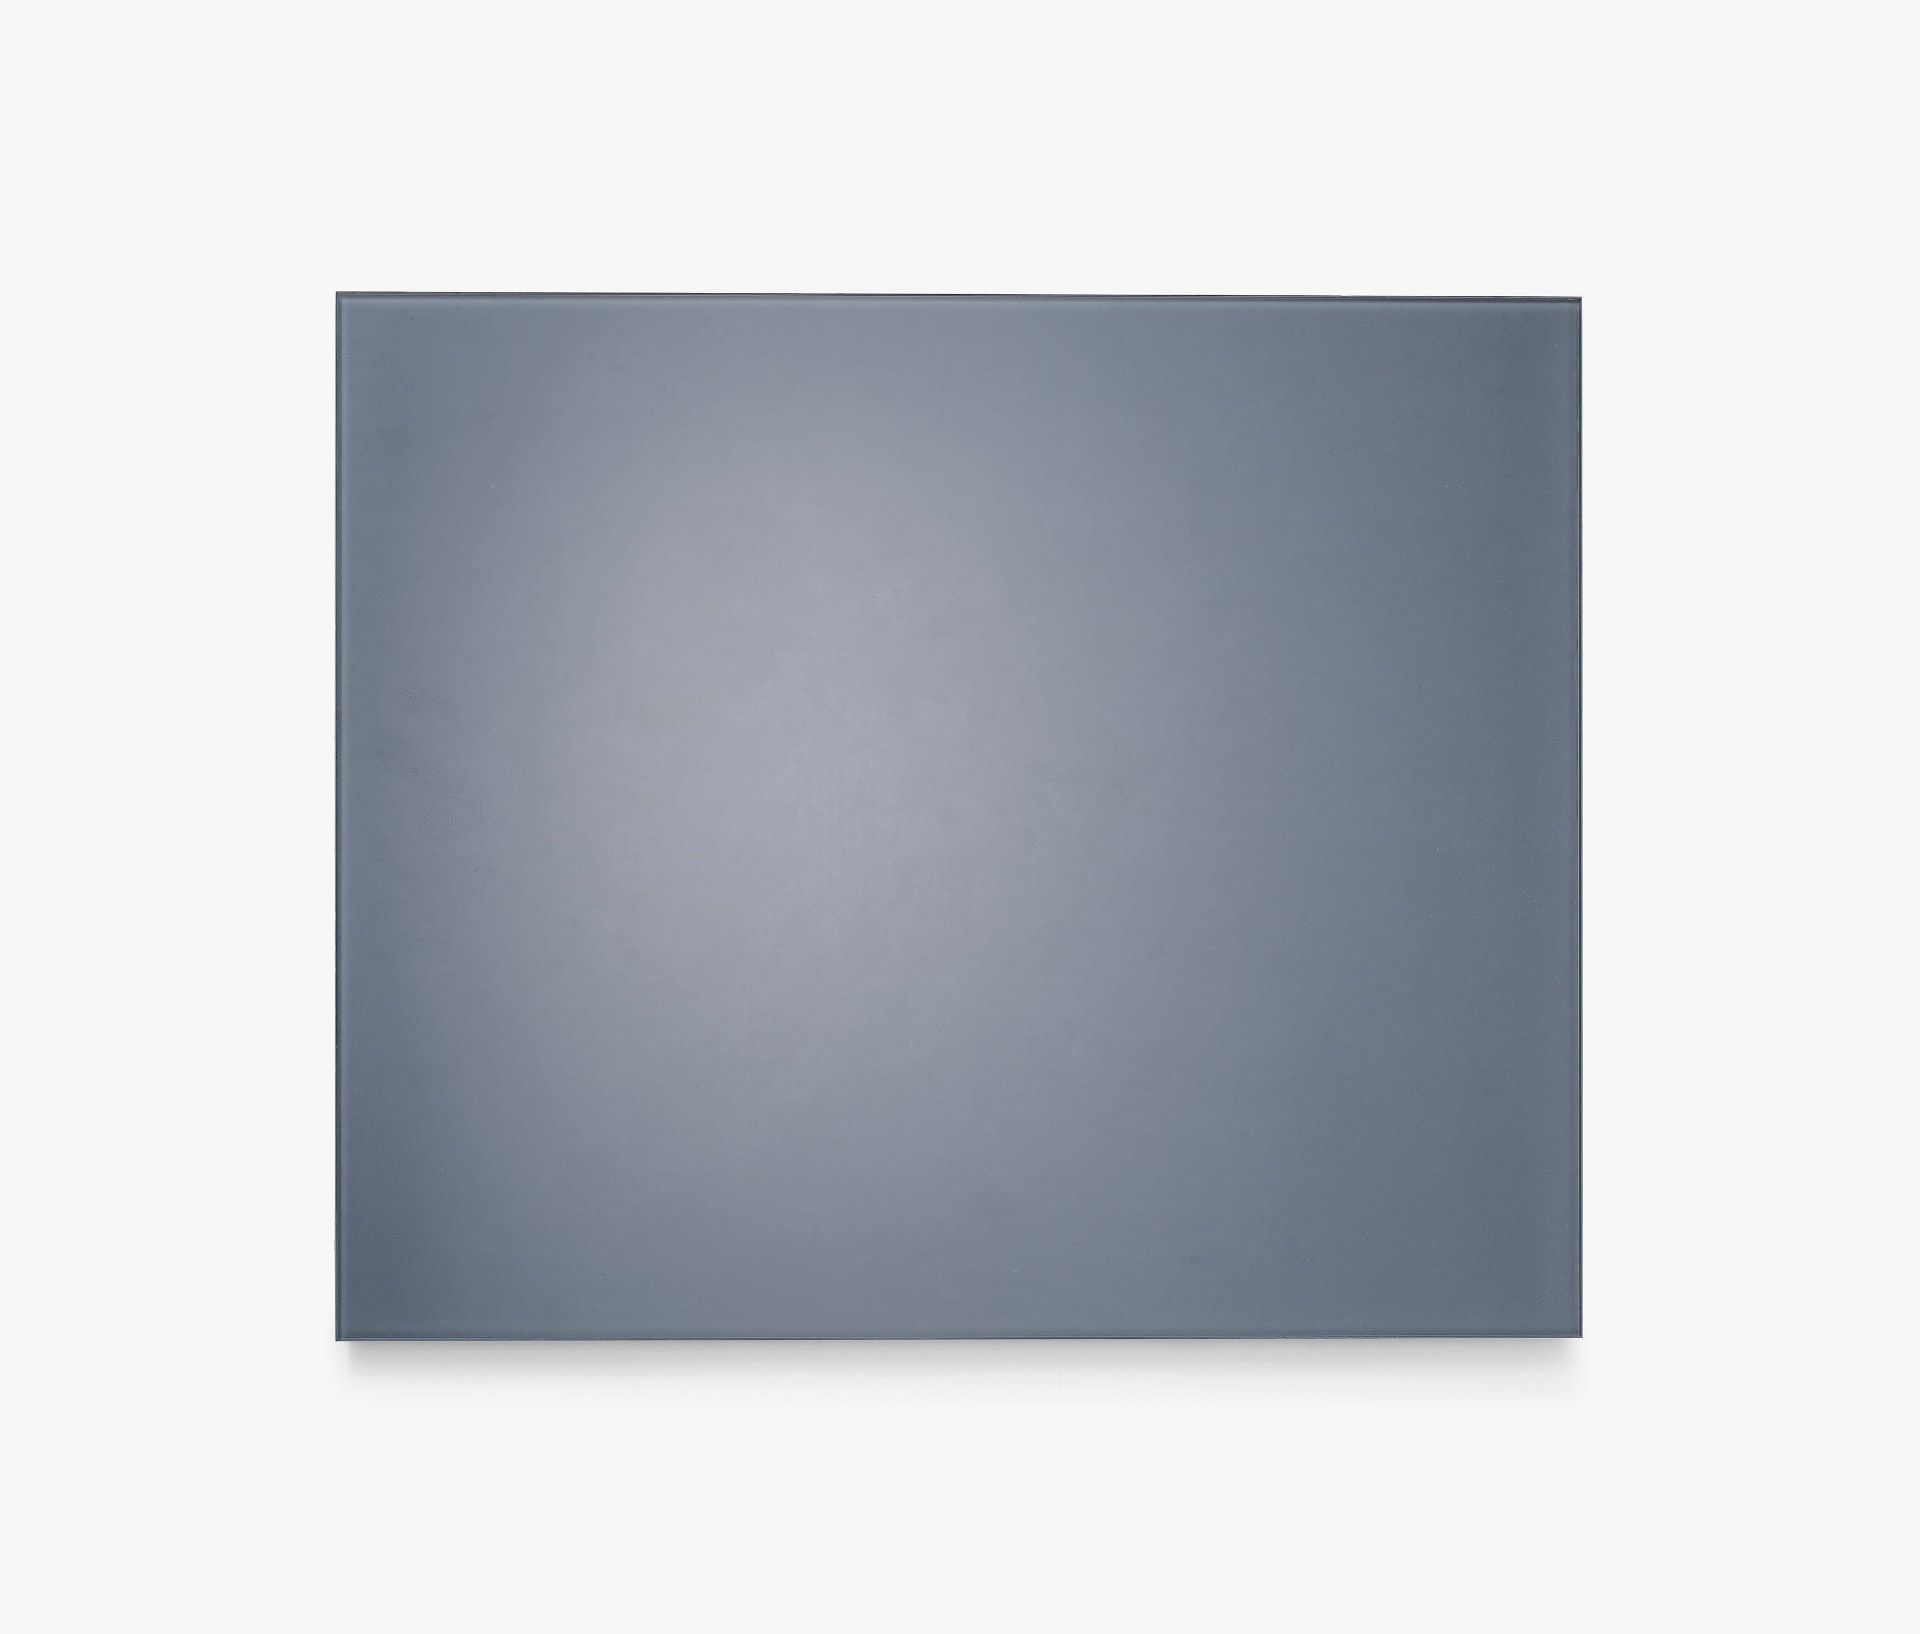 Richter, Gerhard1932 DresdenGrauer Spiegel (Reminiszenz). 2015. 6mm float glass, verso grey baked